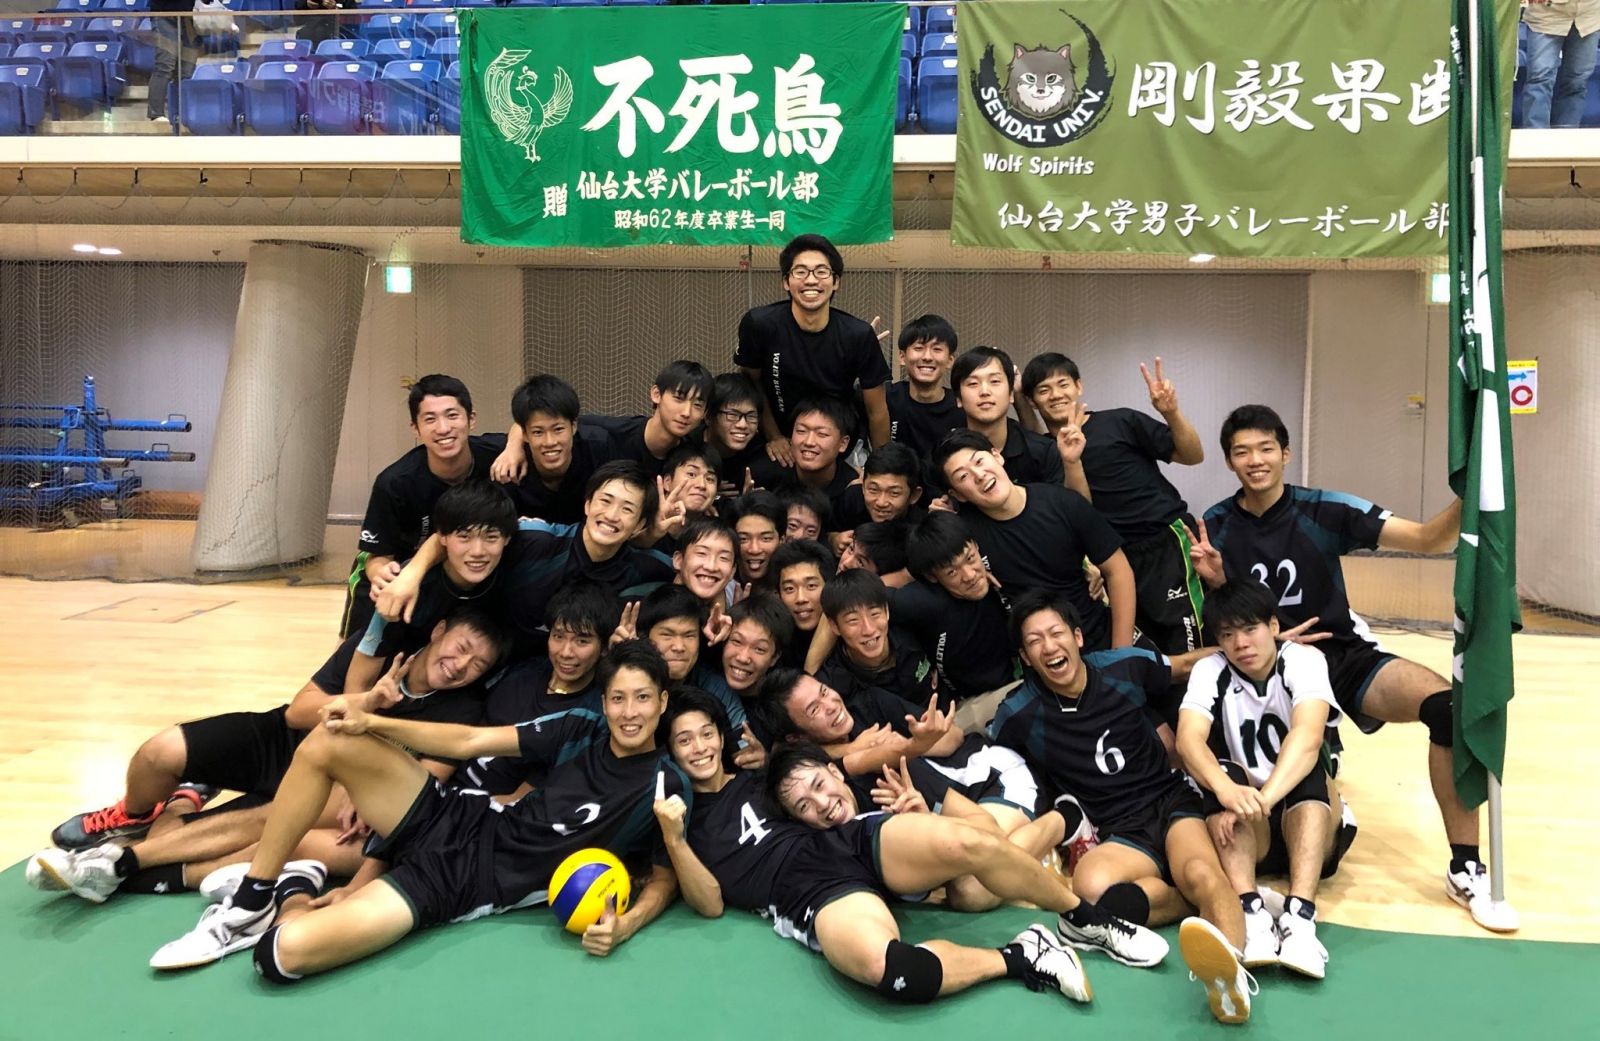 男子バレーボール部 平成30年天皇杯東北ブロックラウンド優勝 仙台大学